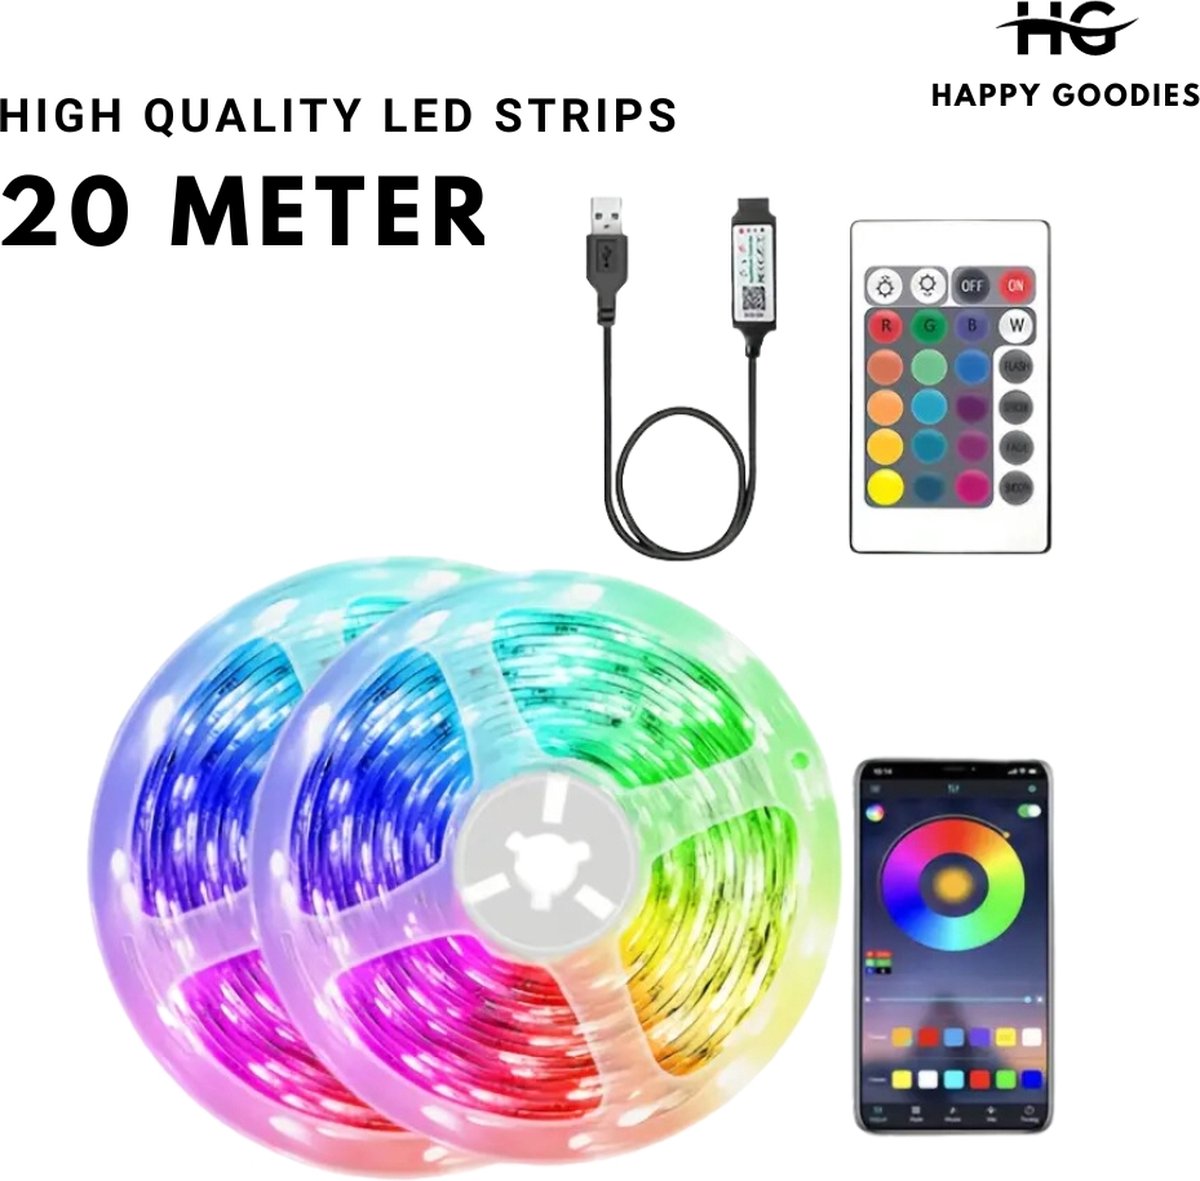 LED strip 20 meter | Met app en afstandsbediening | SMART RGBIC Technology | Zelfklevend | High Quality